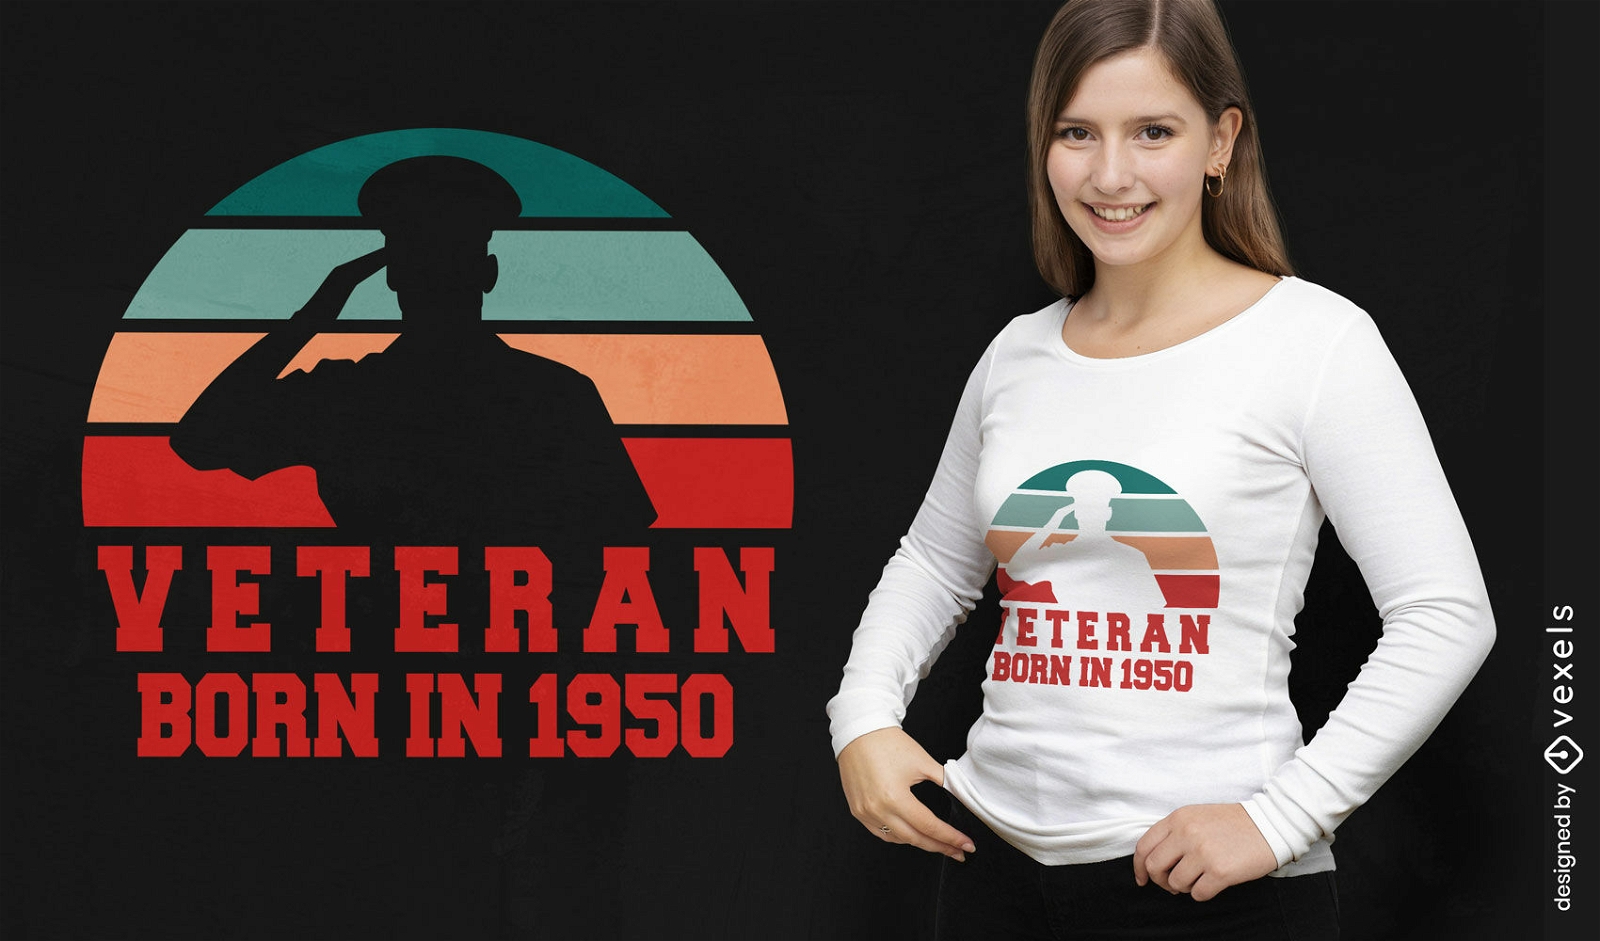 Veteran retro sunset cut out t-shirt design